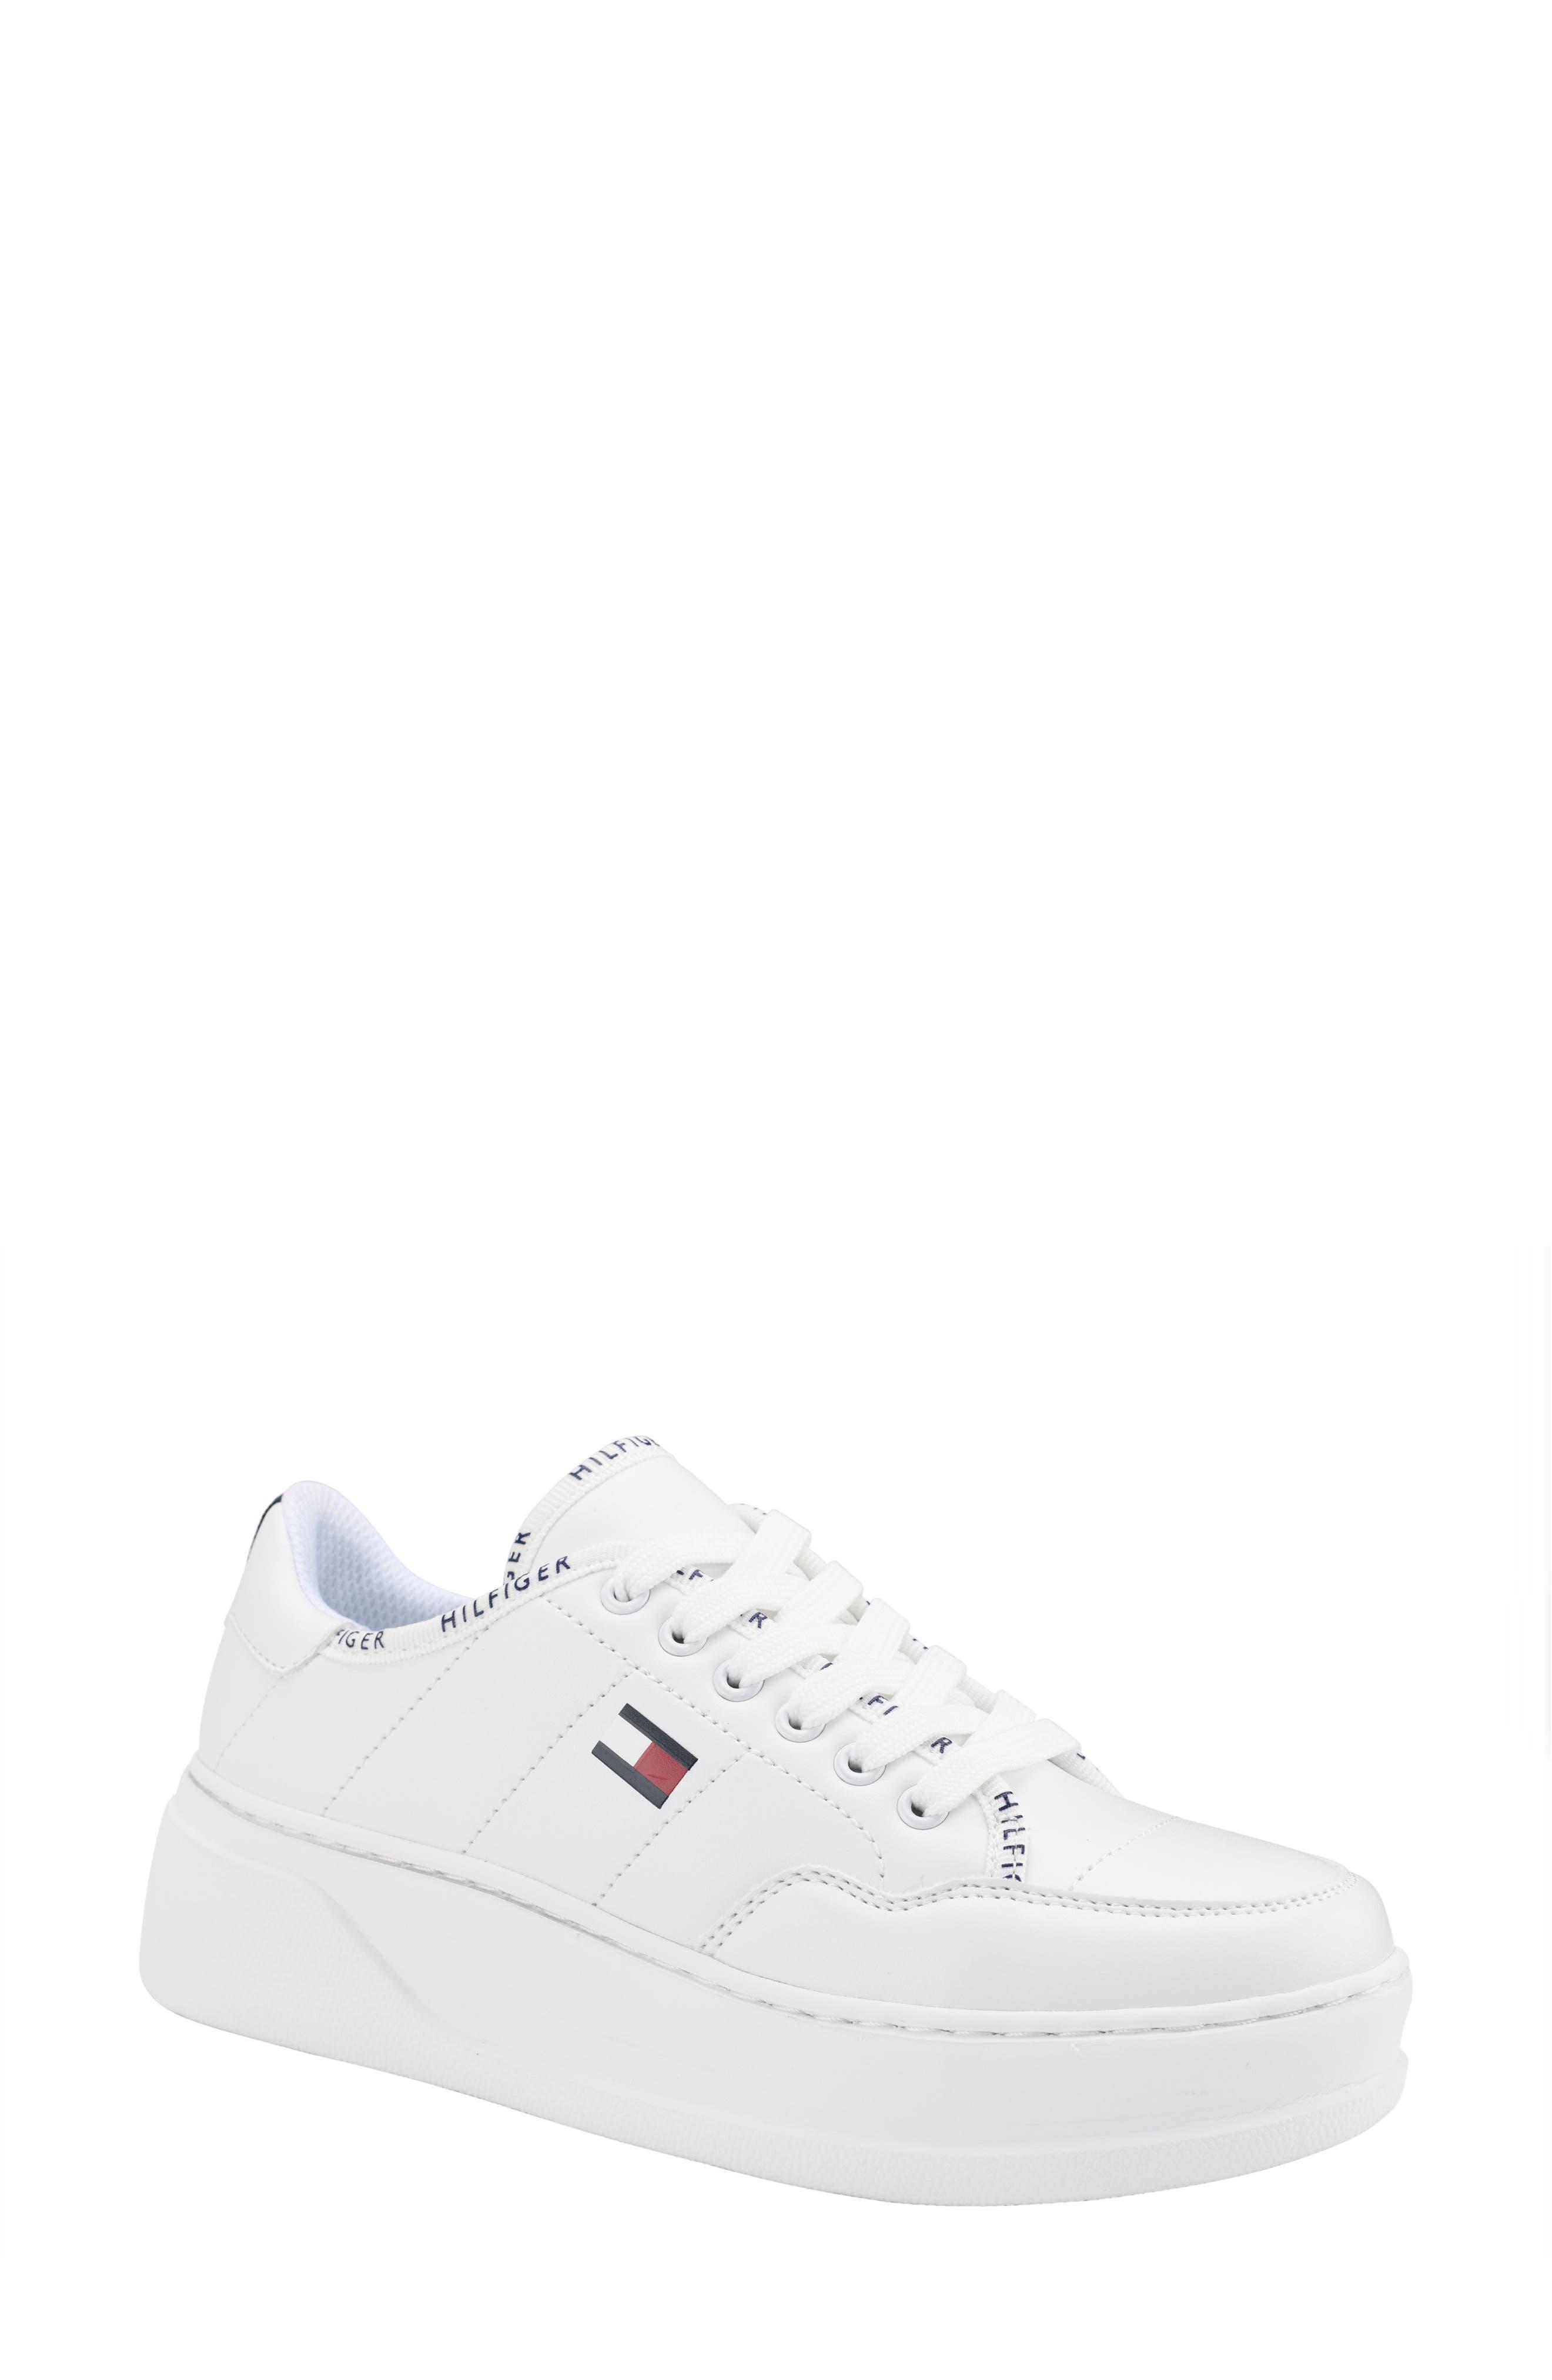 Tommy Hilfiger Grazie Platform Sneaker in White | Lyst